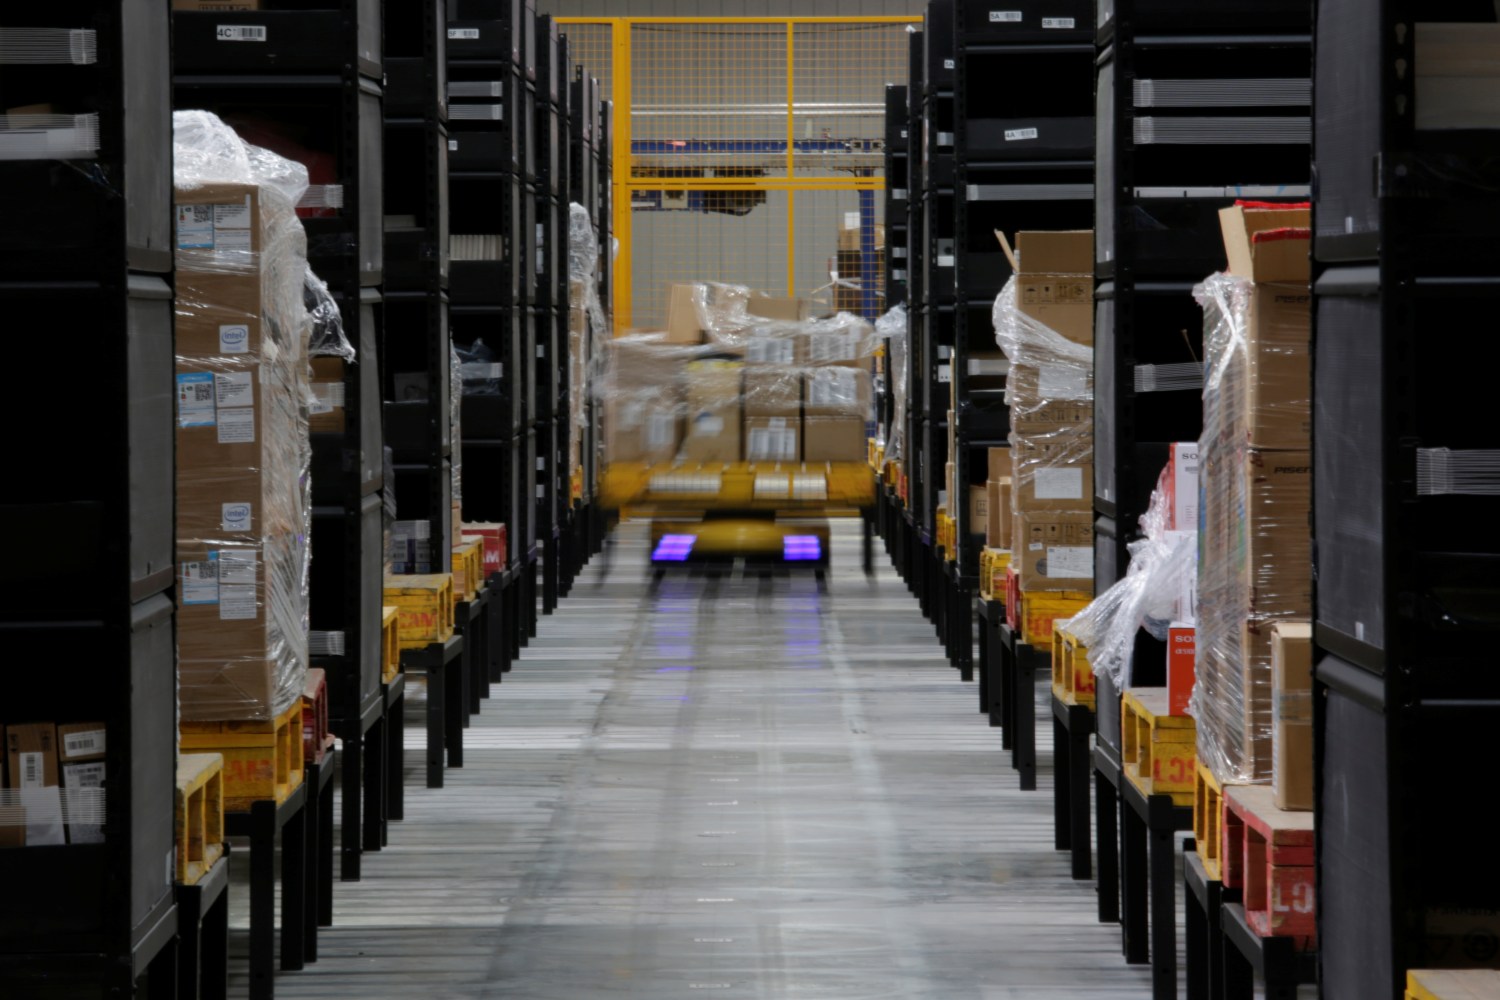 A robot moves goods through stocking shelves